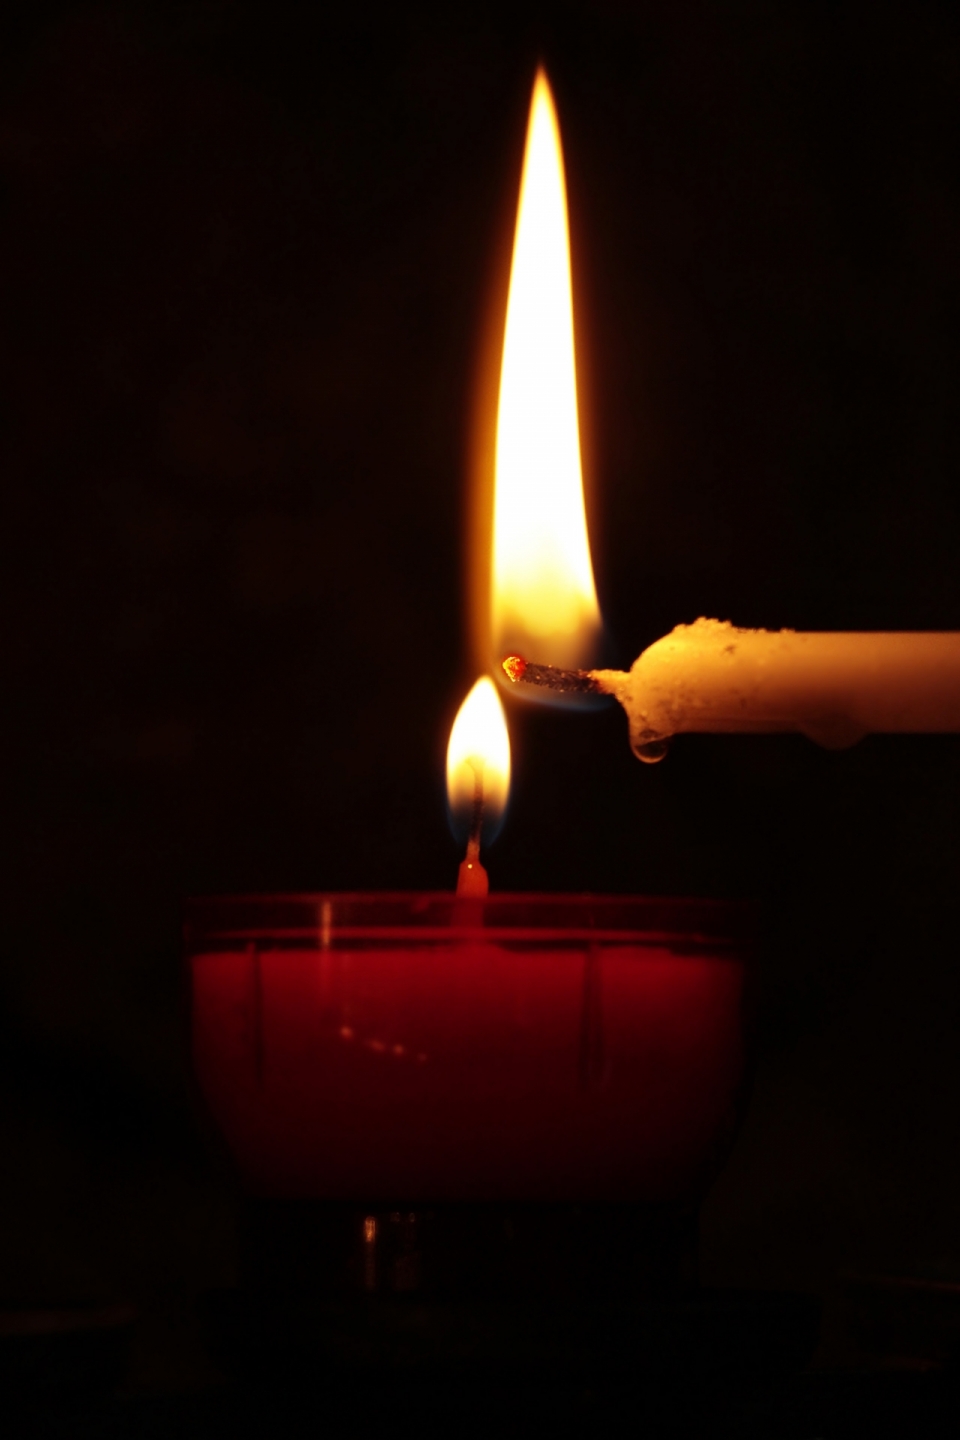 黑色背景下白色蜡烛点燃了红色蜡烛